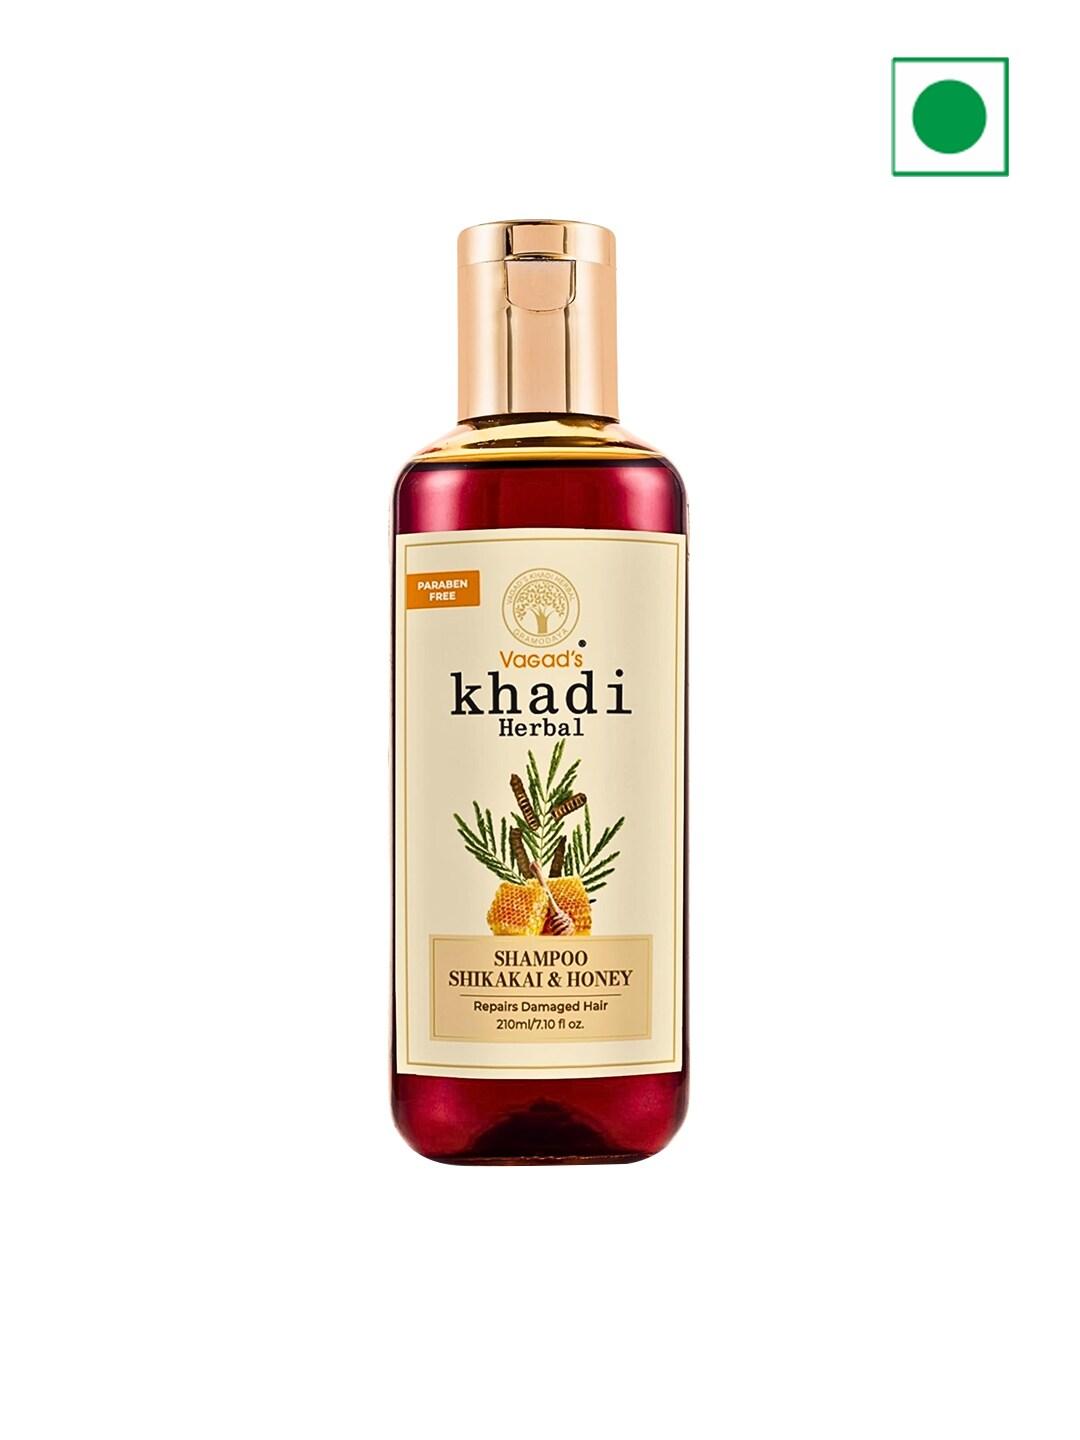 Vagads Herbal Shikakai & Honey Shampoo - 210ml